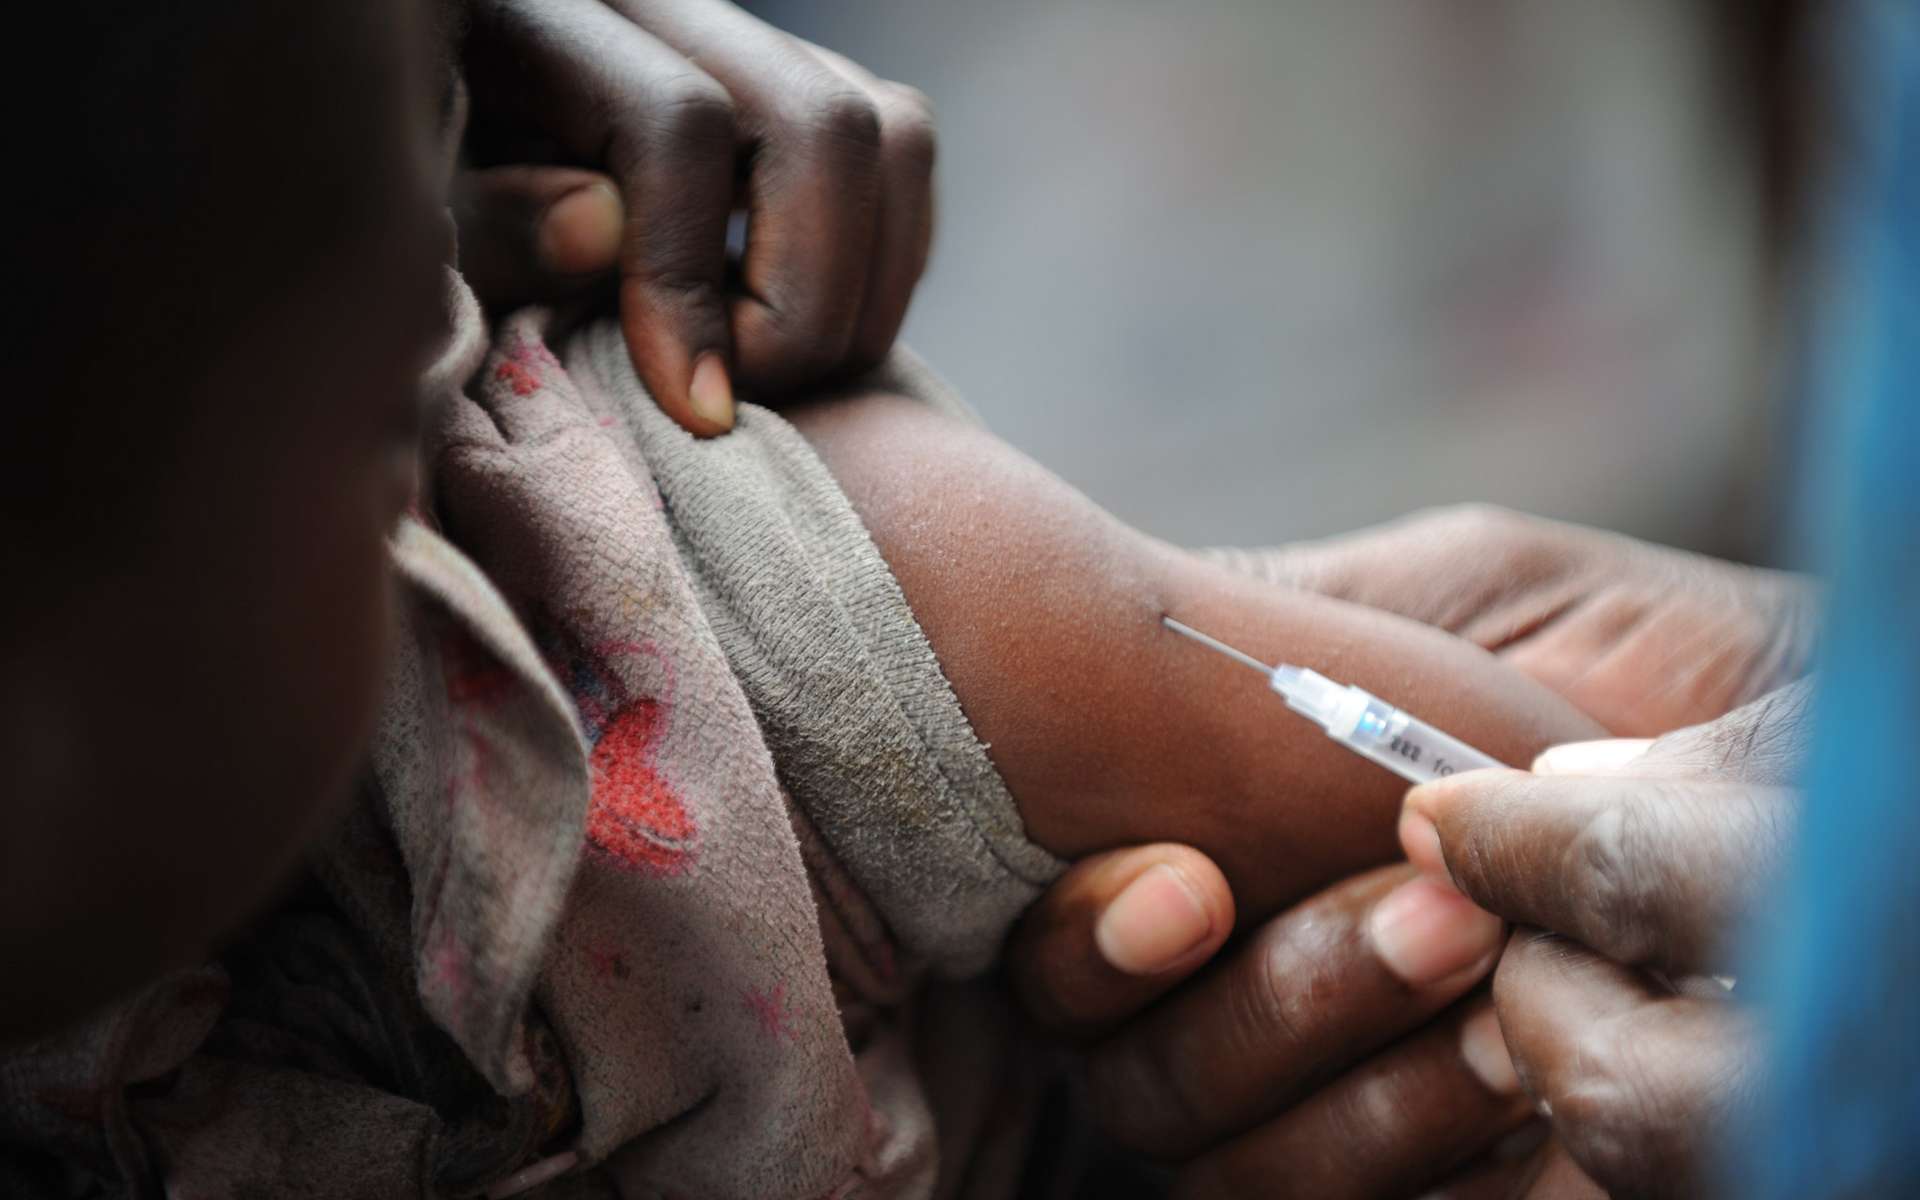 Polio, rougeole, dengue : craintes d'une crise sanitaire à venir